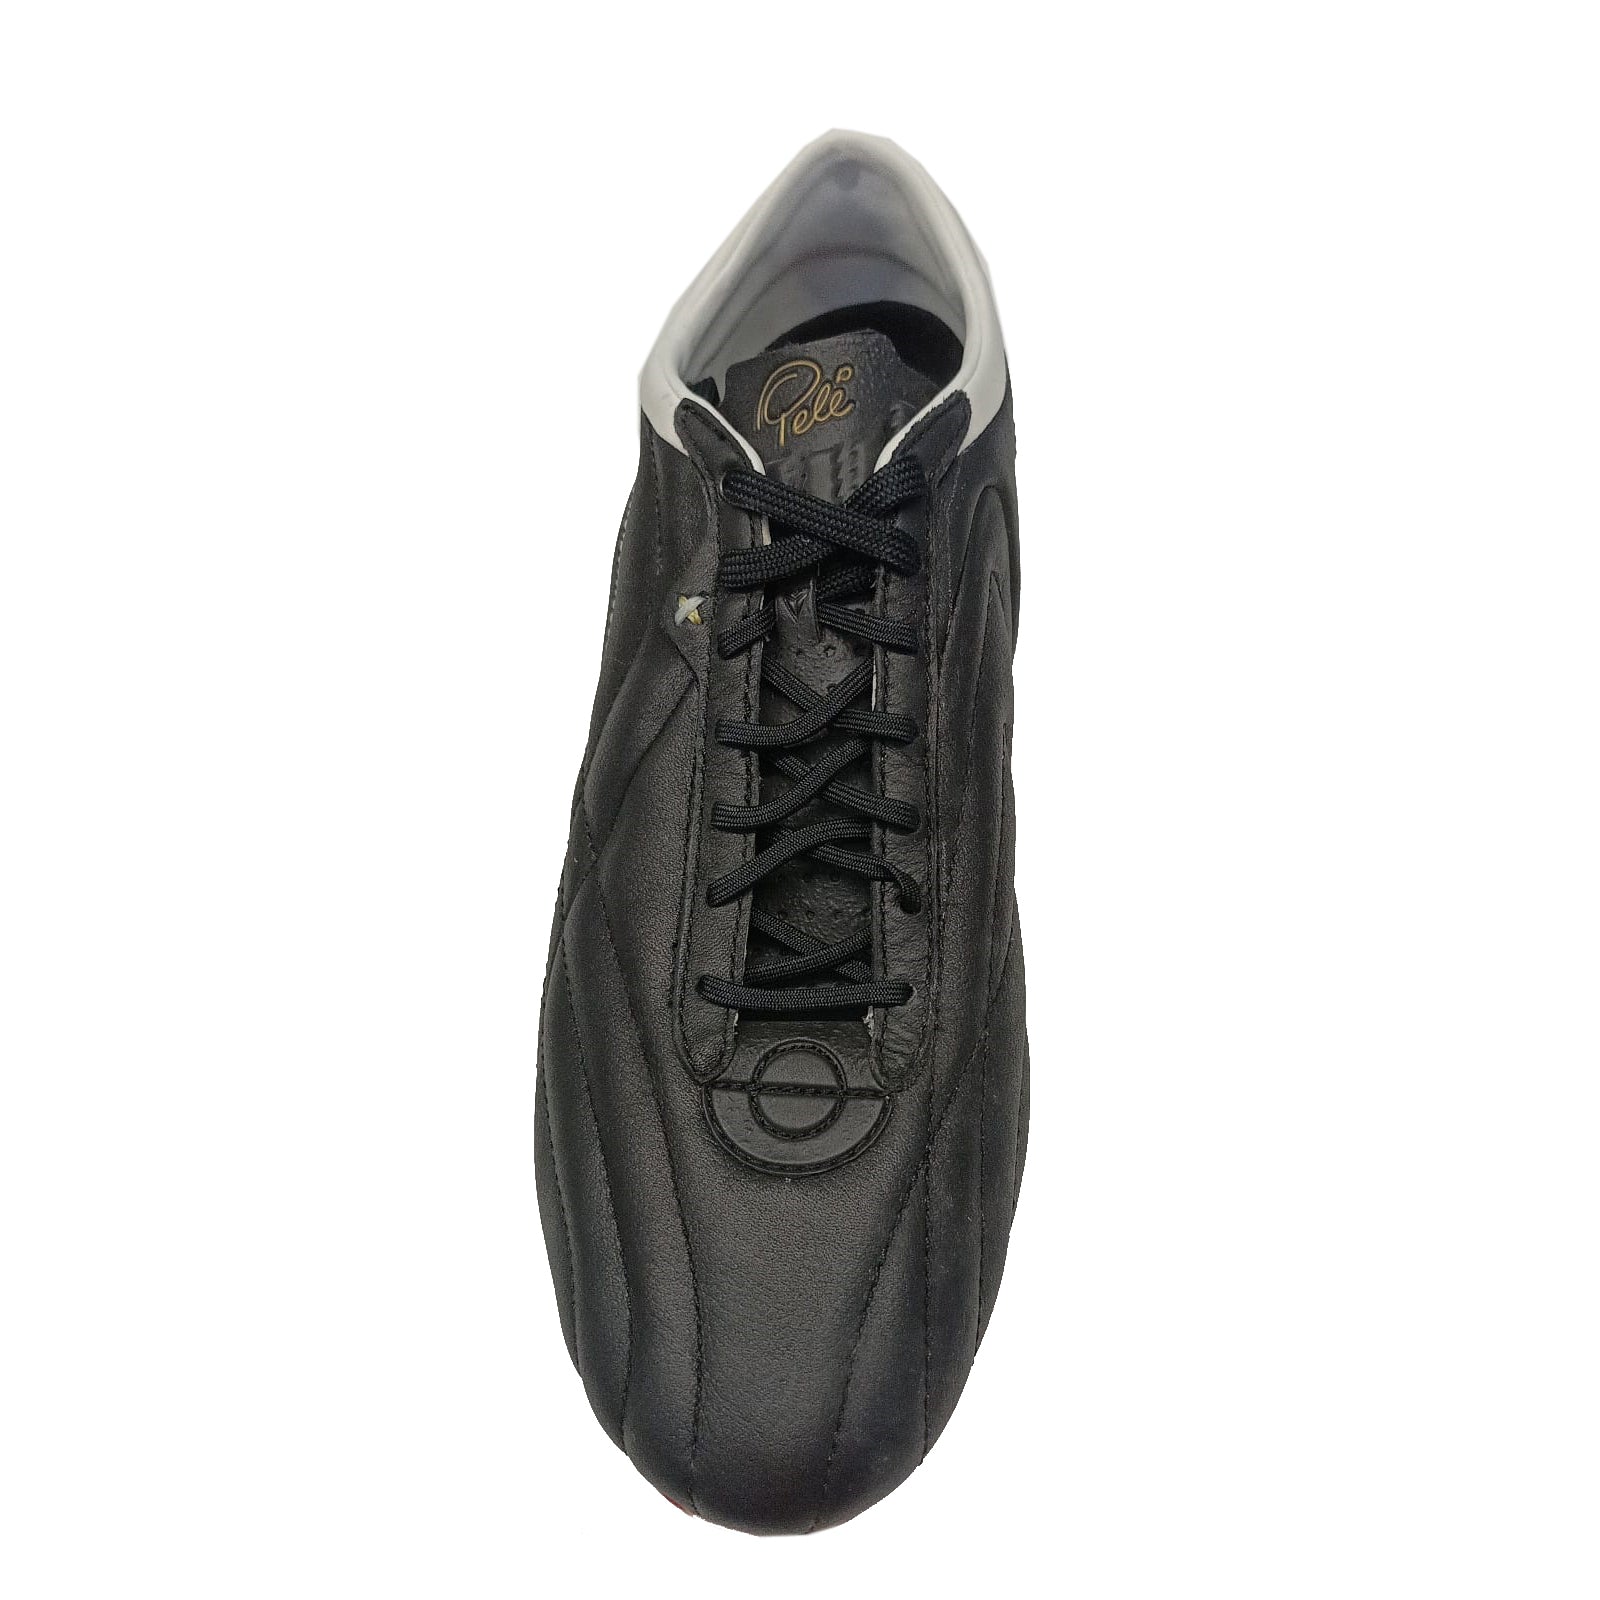 Pele Sports 1962 Redeemer FG Men's Football Boots - Black/High Risk Red/Rich Gold